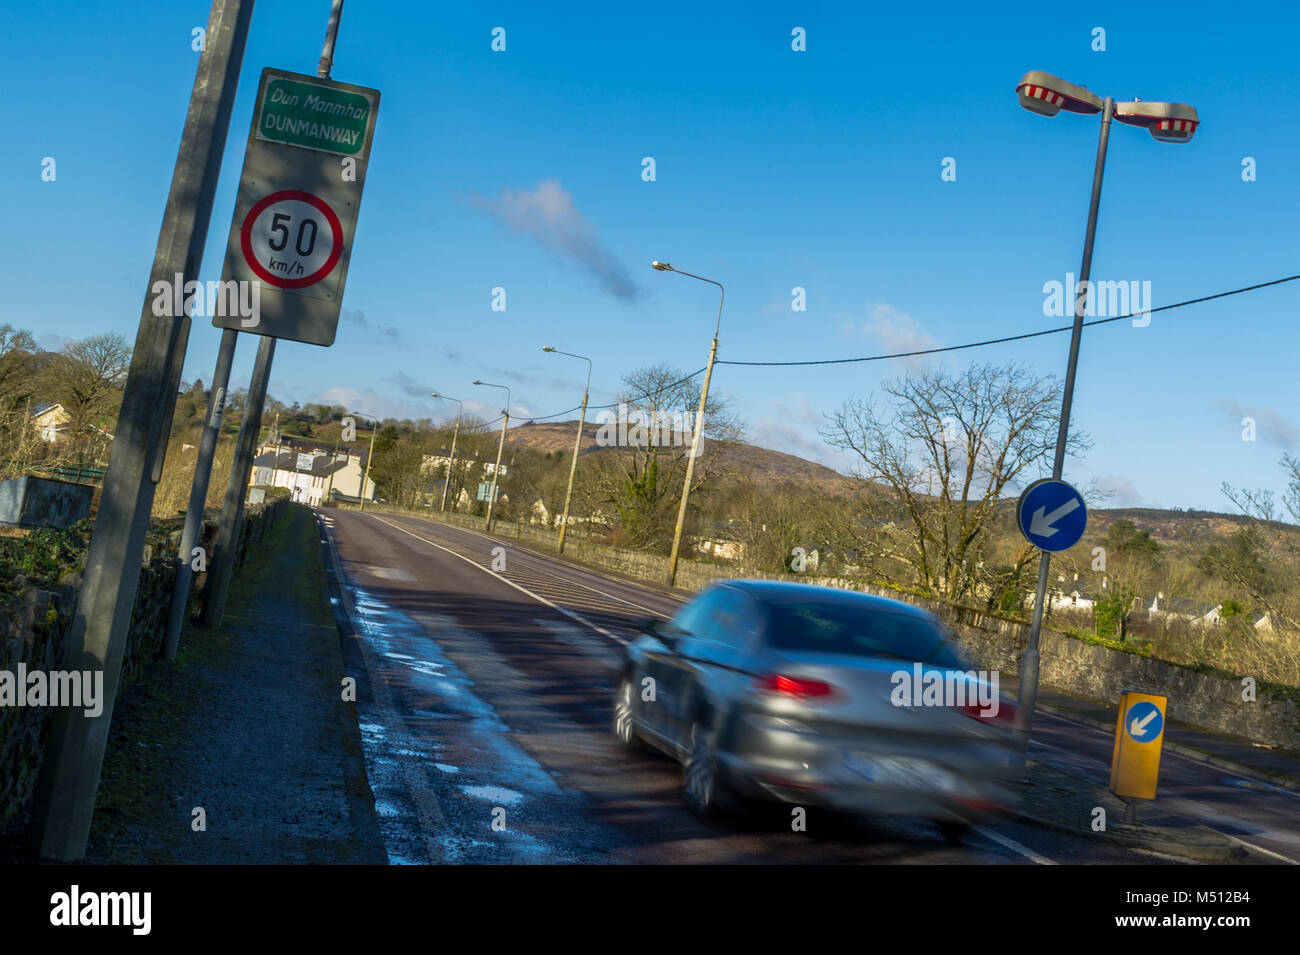 Passe une voiture roulant à 50 km/h de vitesse maximum sign in 6800, le comté de Cork, Irlande. Briser la limite de vitesse, notion de sécurité routière. Banque D'Images